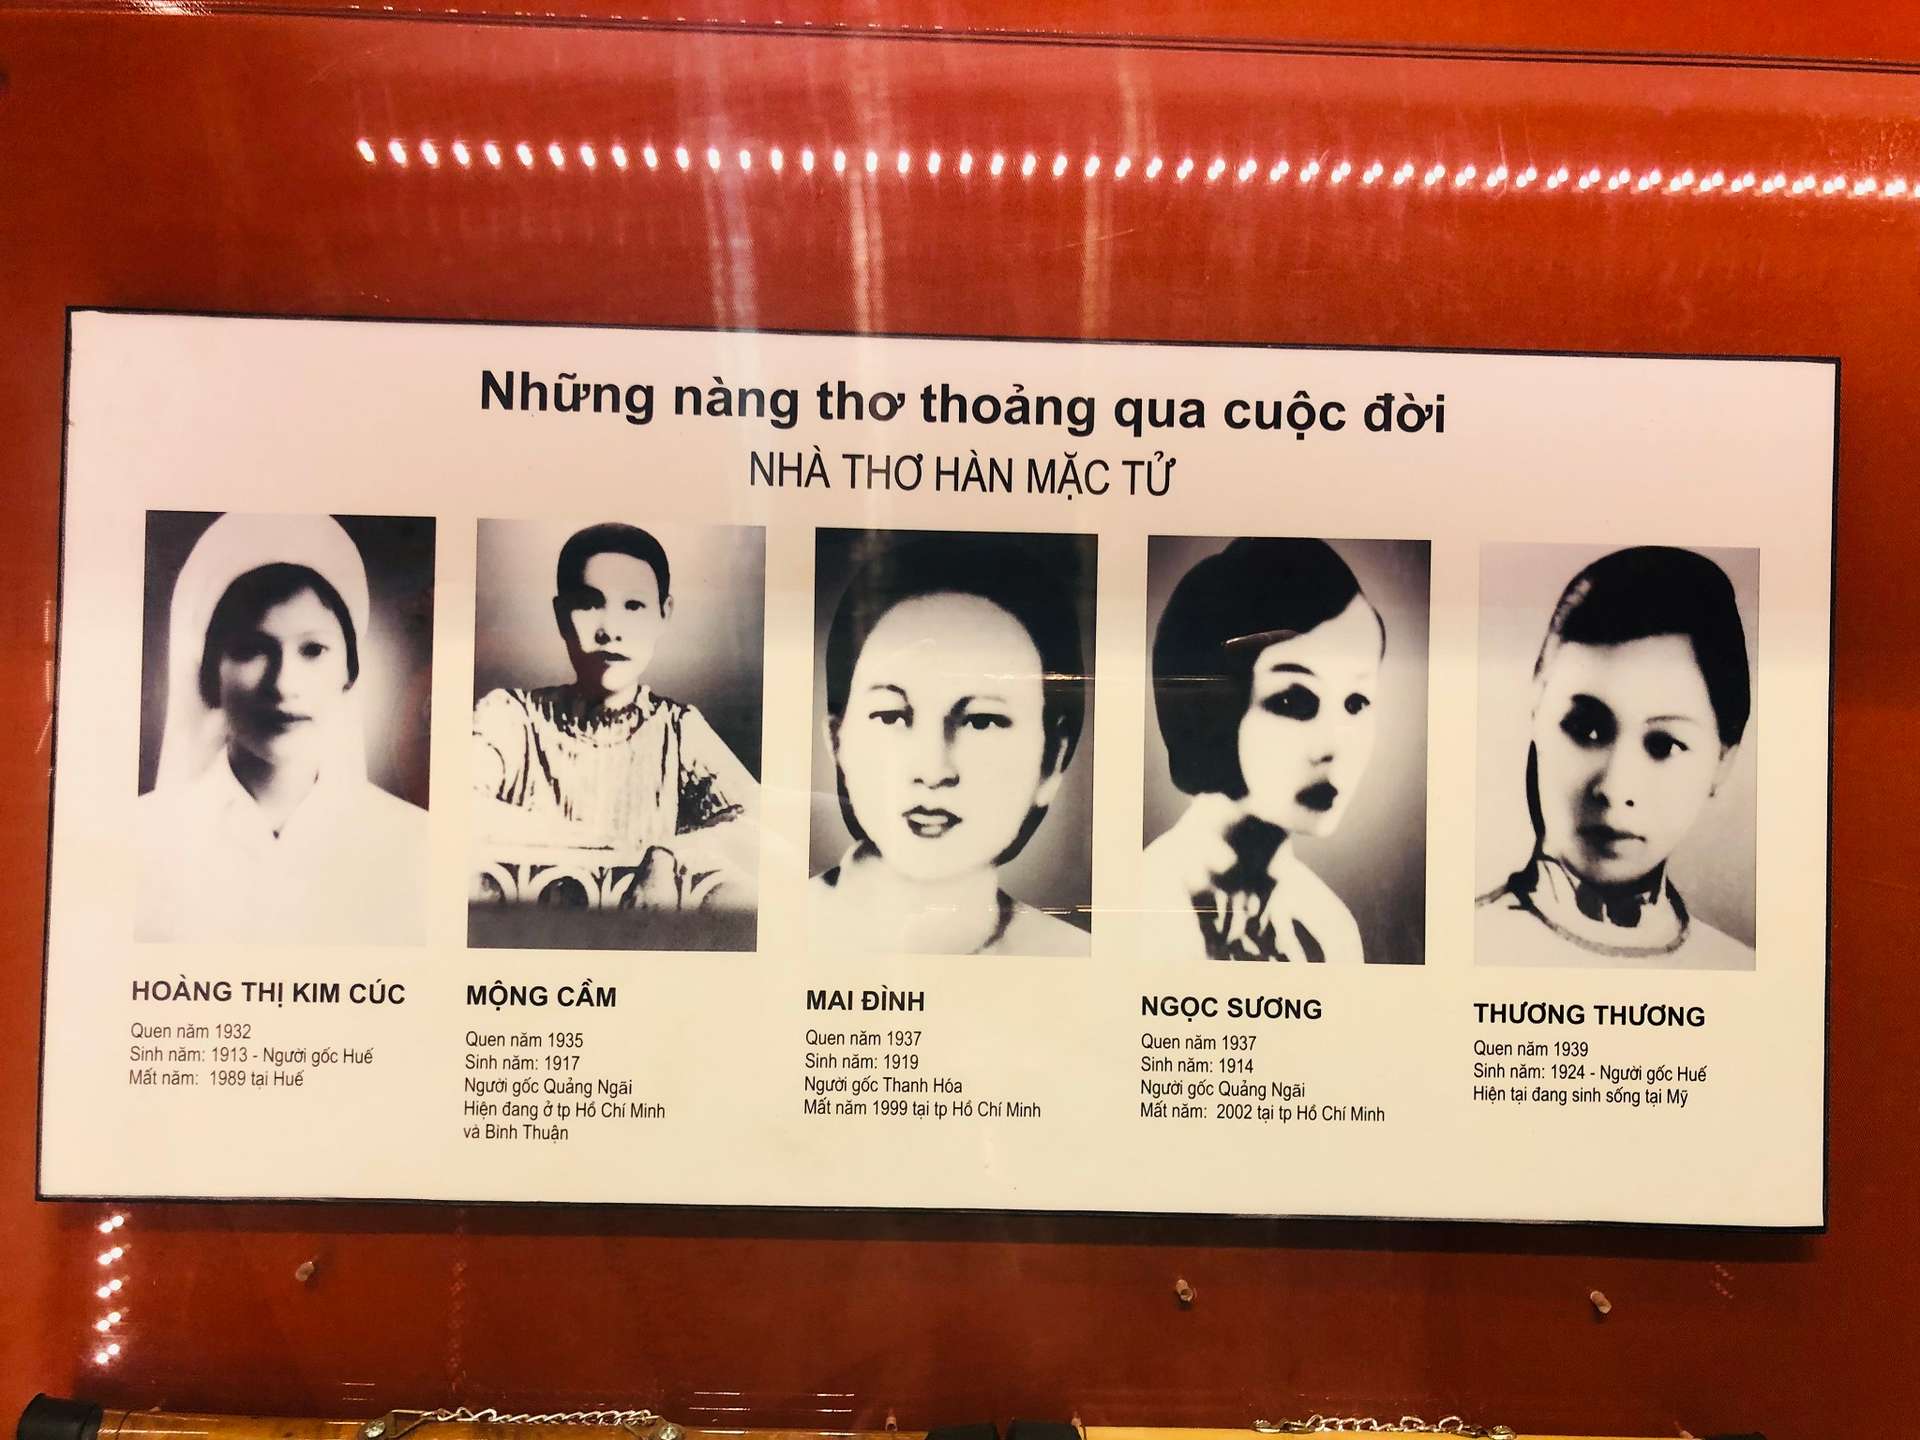 Bảo tàng Văn học Việt Nam